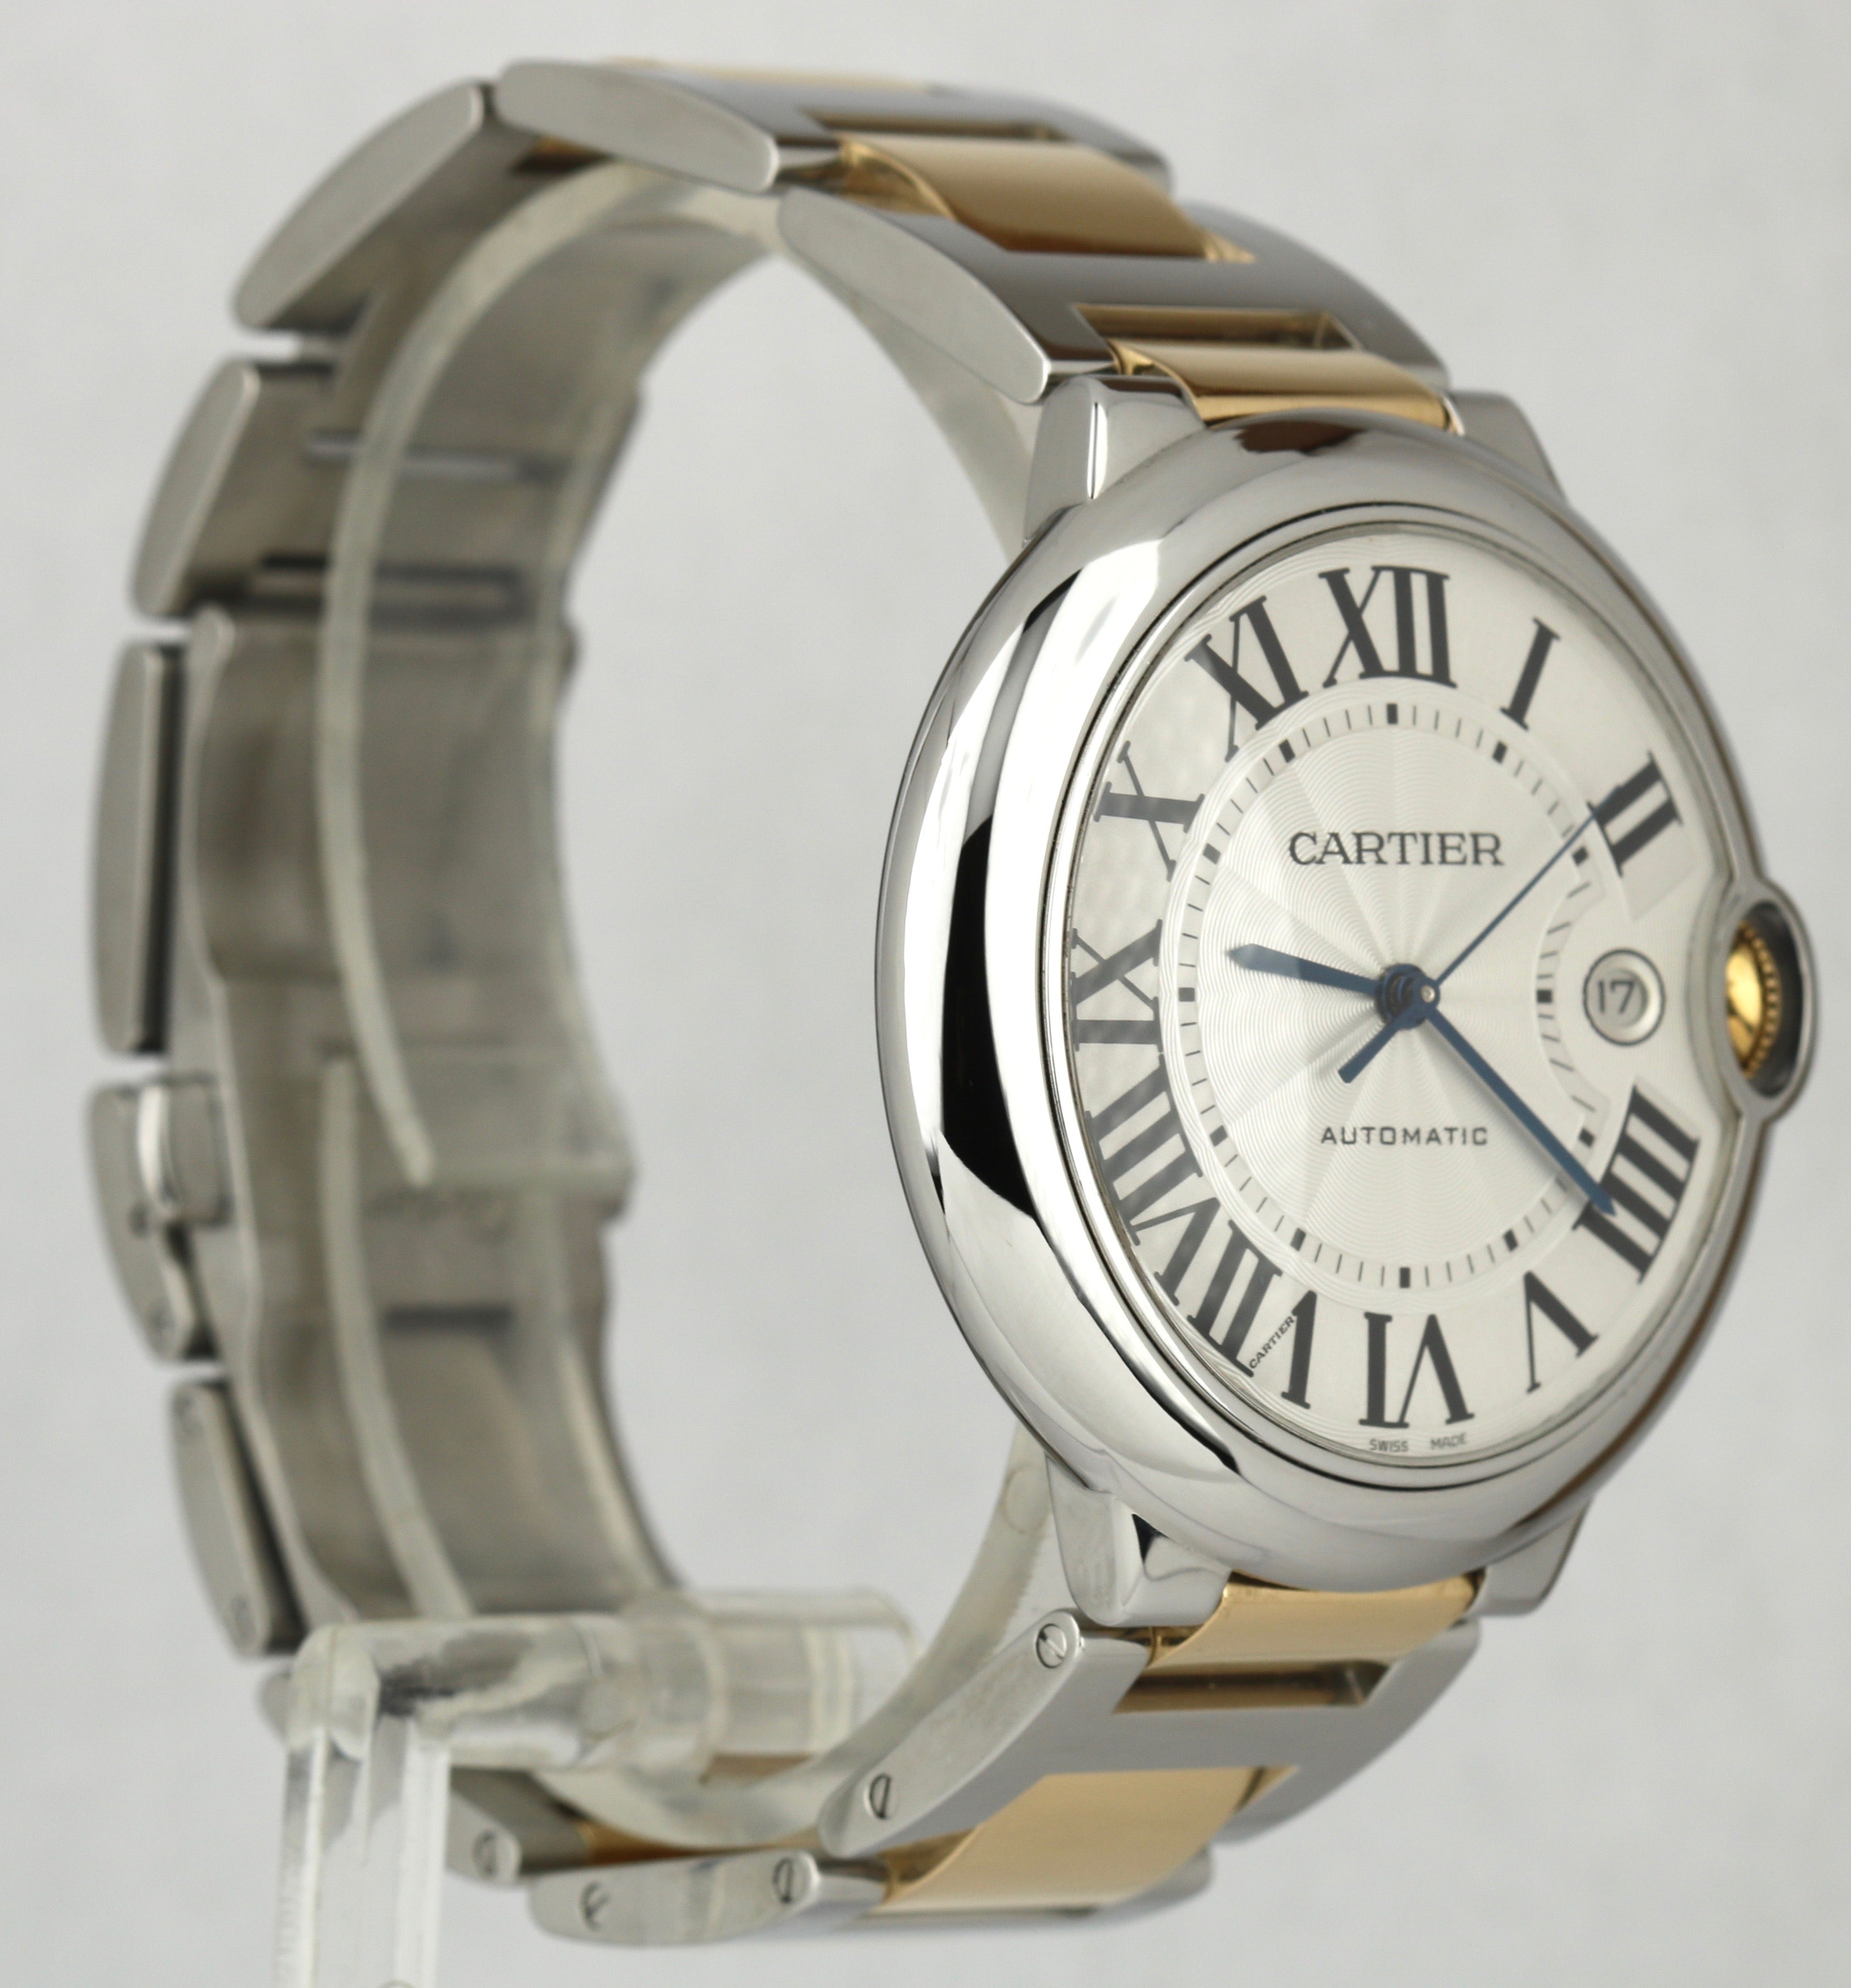 Cartier Ballon Bleu 42mm W69009Z3 3001 Two-Tone 18K Gold Silver Automatic Watch